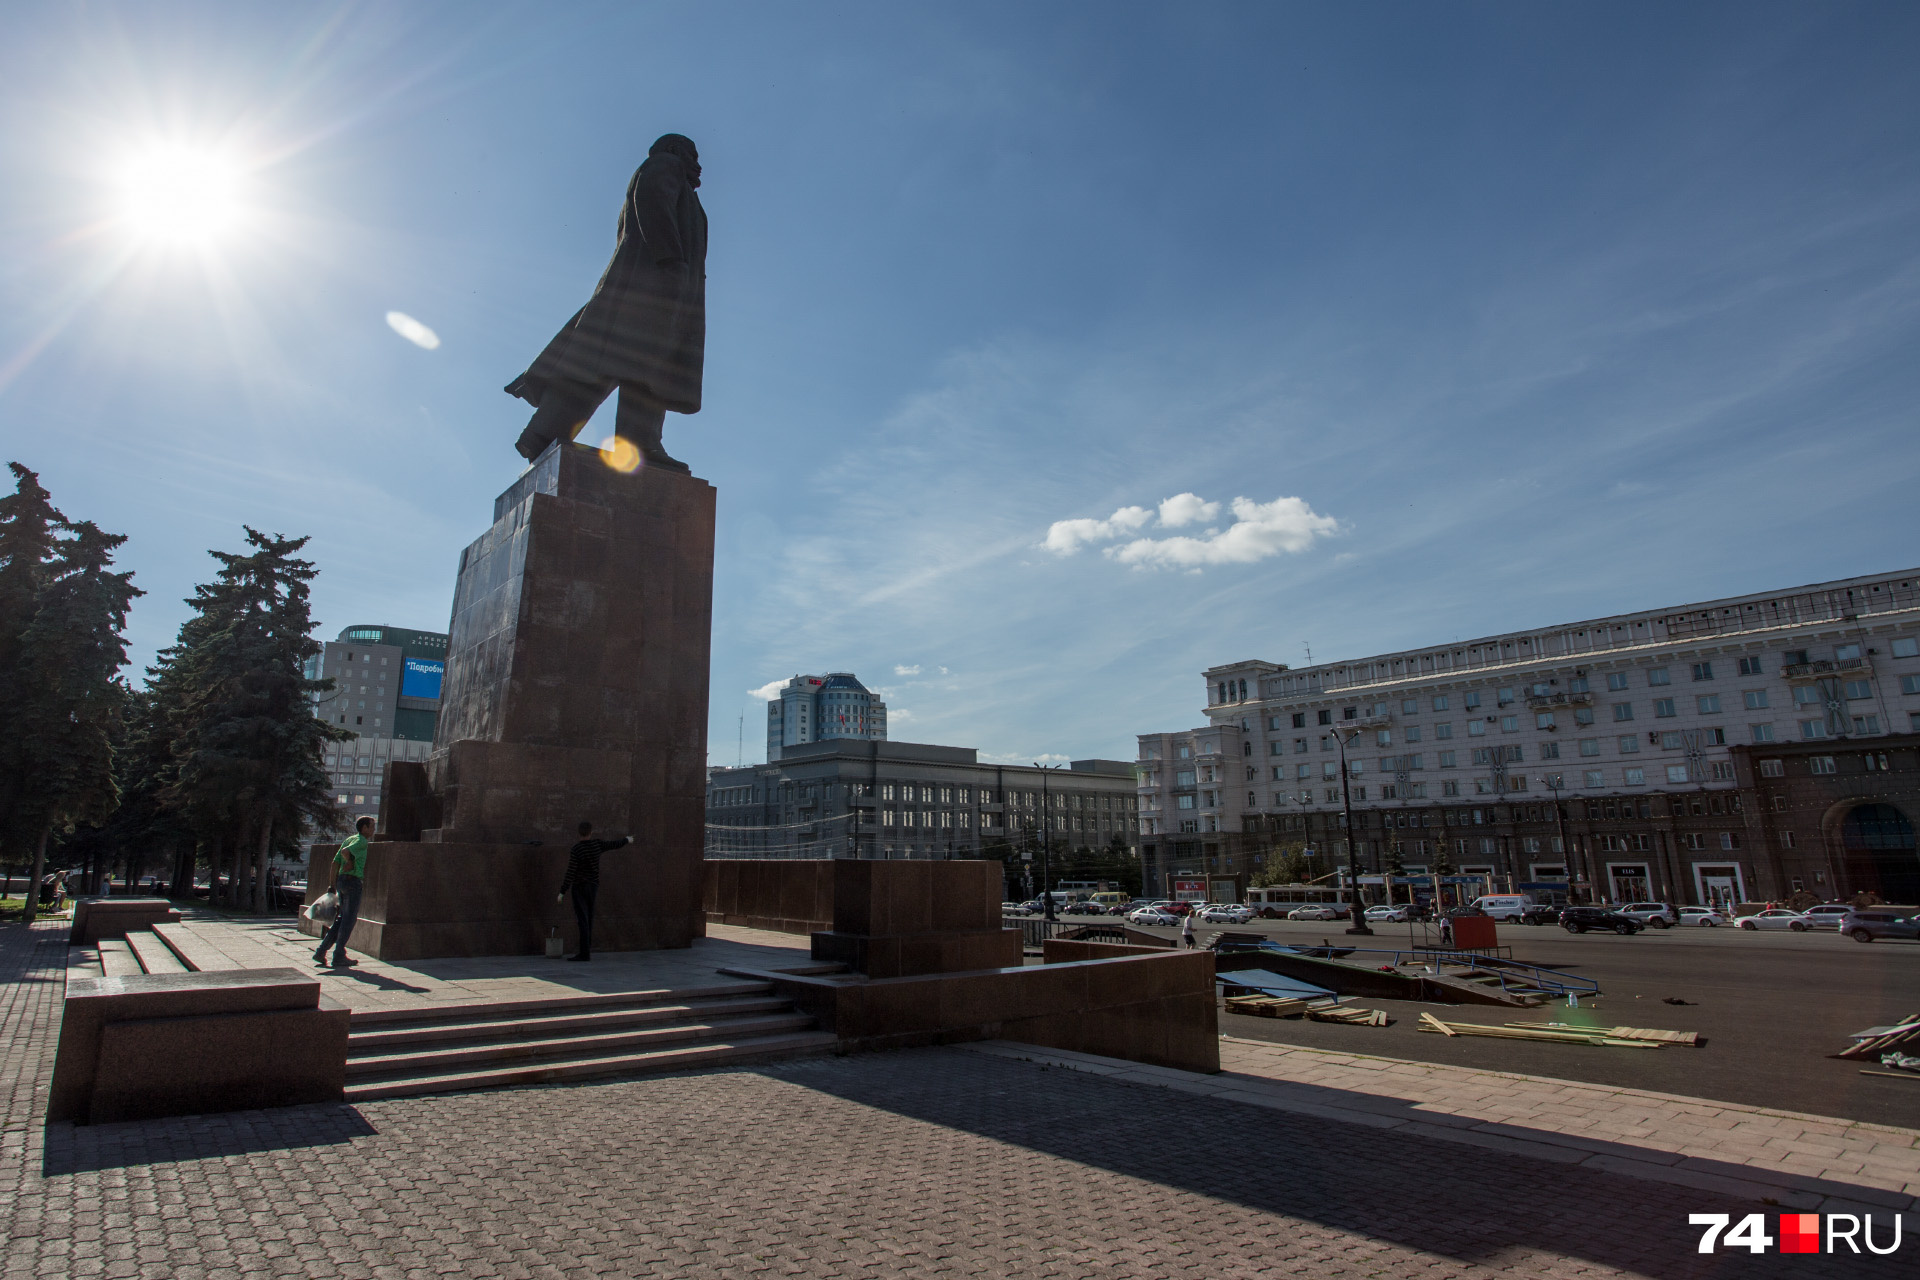 Памятник В. И. Ленину появился в центре города в конце 1950-х годов — прямо напротив дома на площади